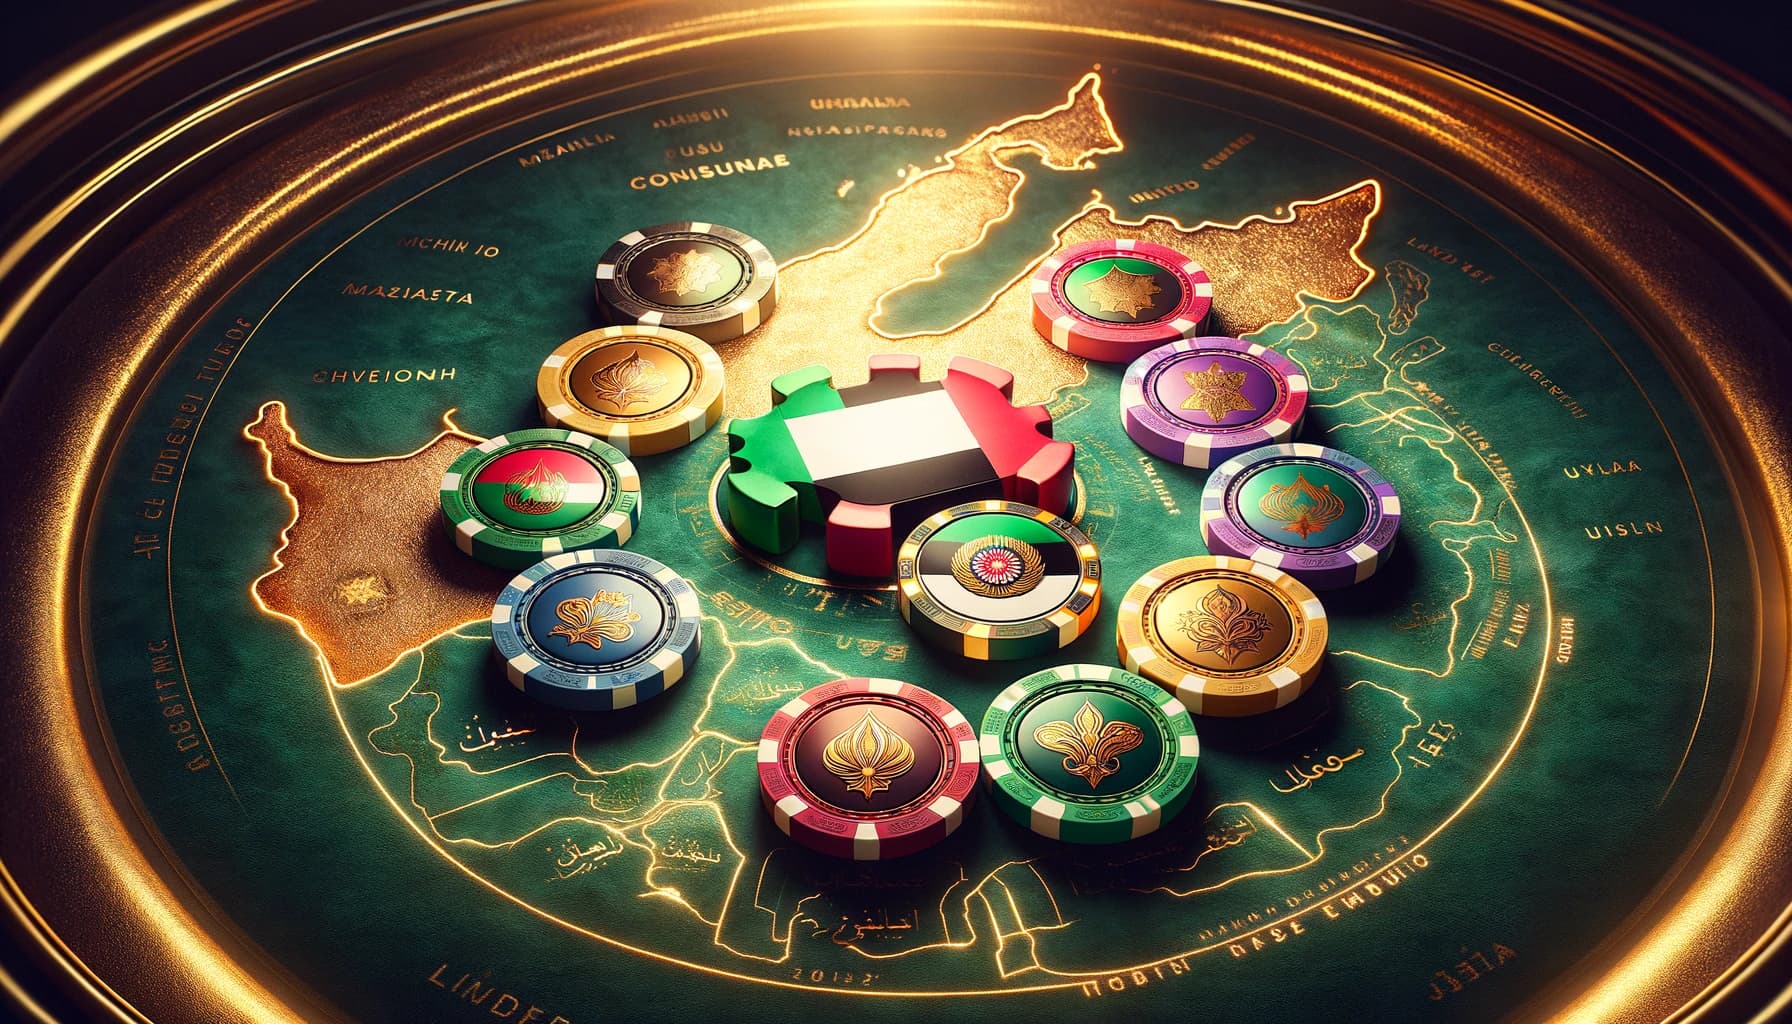 UAE Considers Allocating Casino Licenses Across All 7 Emirates